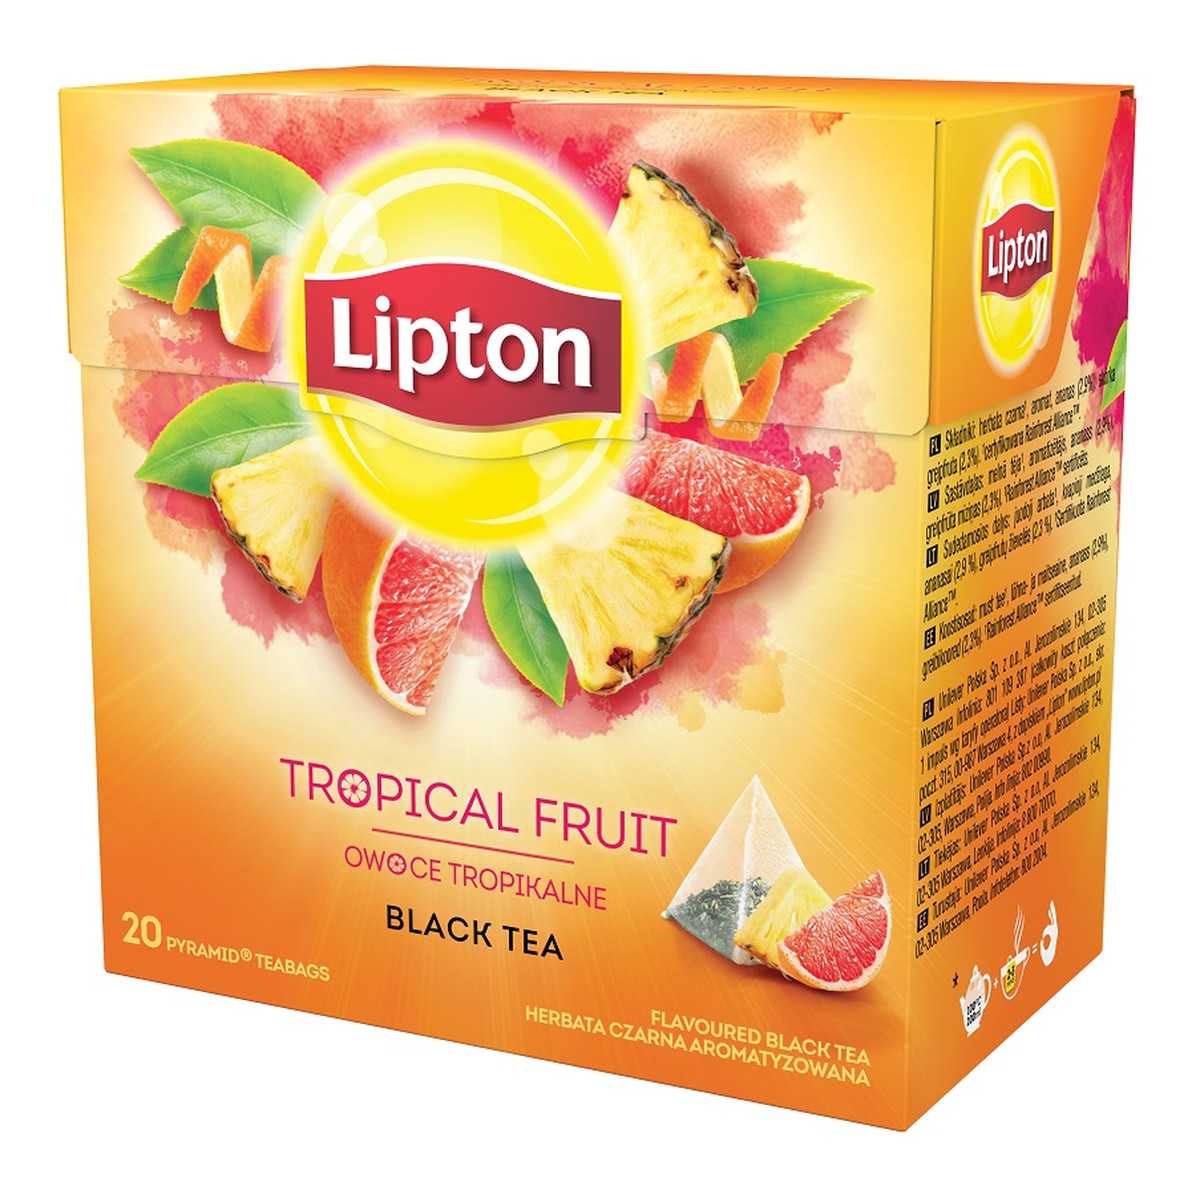 Lipton Black Tea herbata czarna aromatyzowana Owoce Tropikalne 20 piramidek 36g